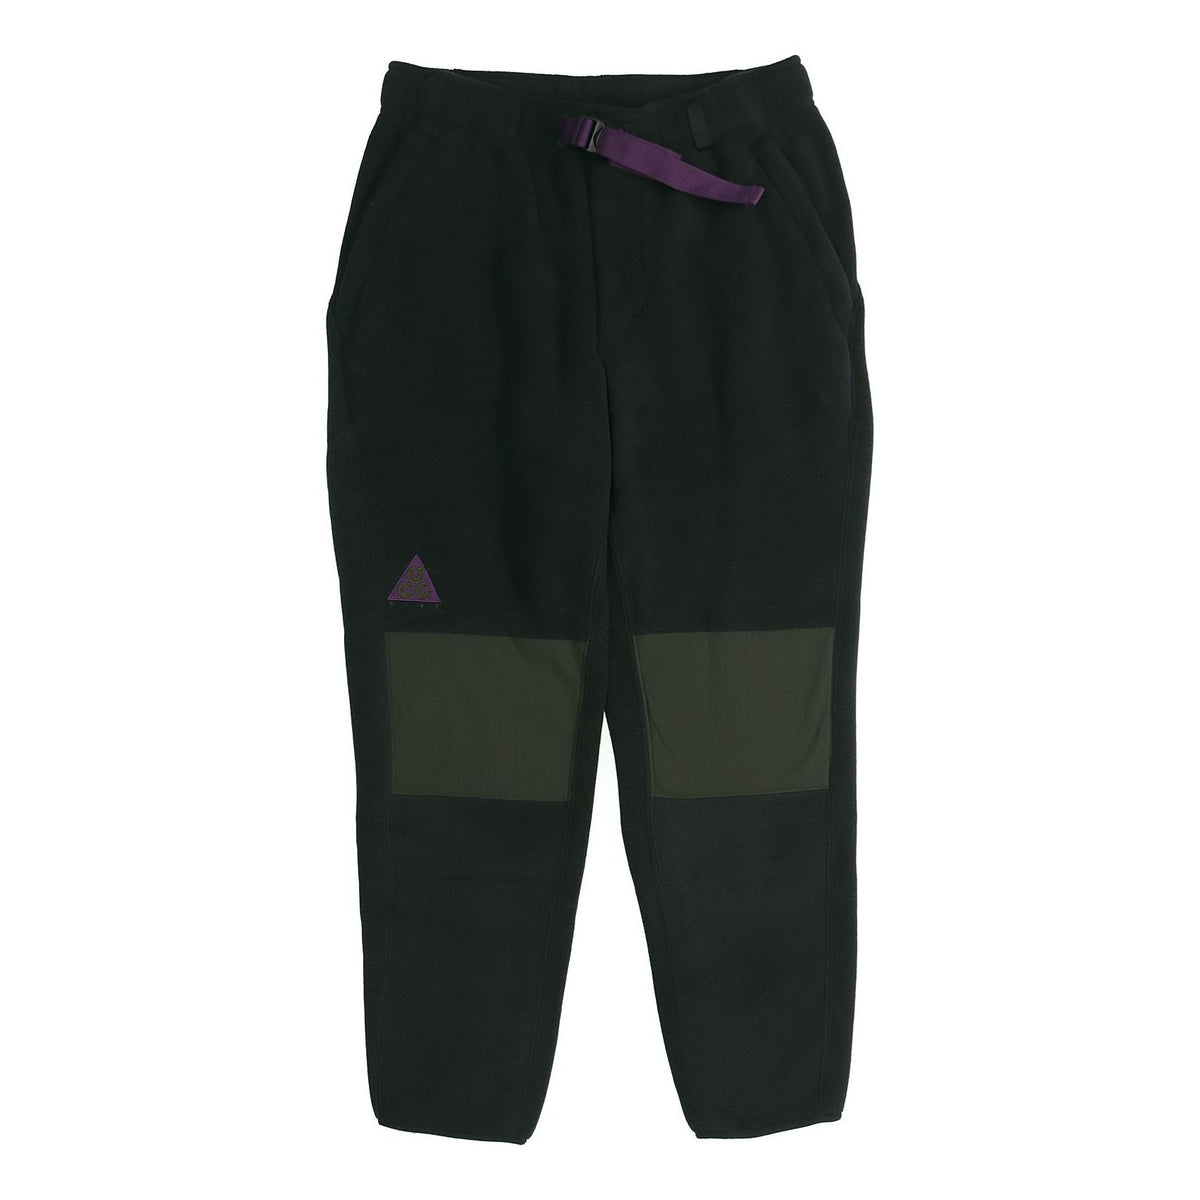 Men's Nike ACG Fleece Black Long Pants/Trousers AJ2014-010 - KICKS